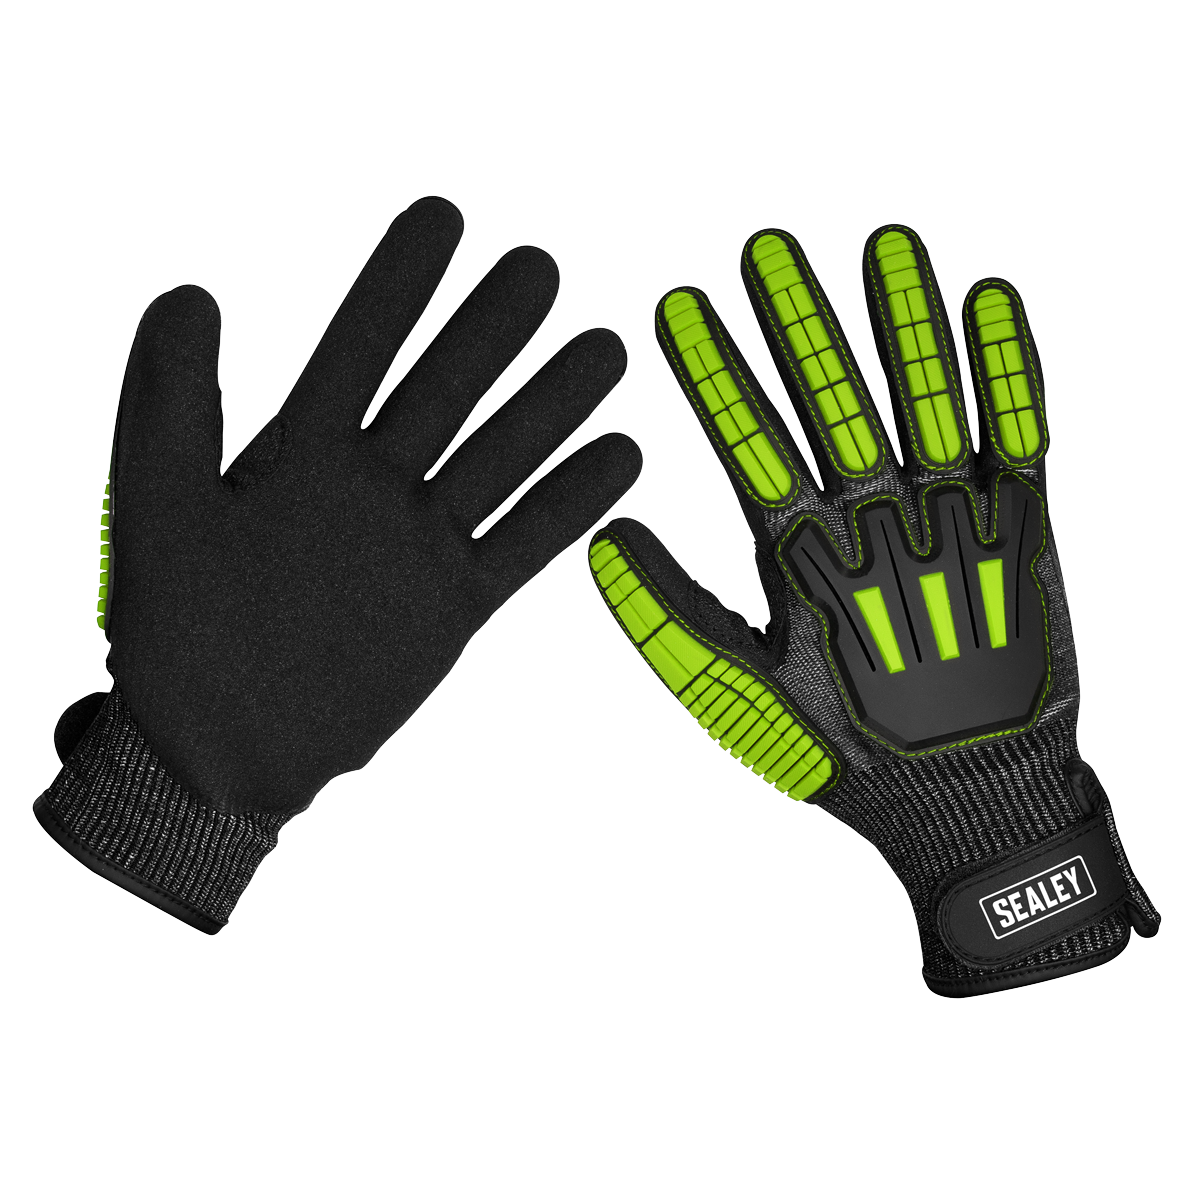 Cut & Impact Resistant Gloves - Large - Pair - SSP39L - Farming Parts